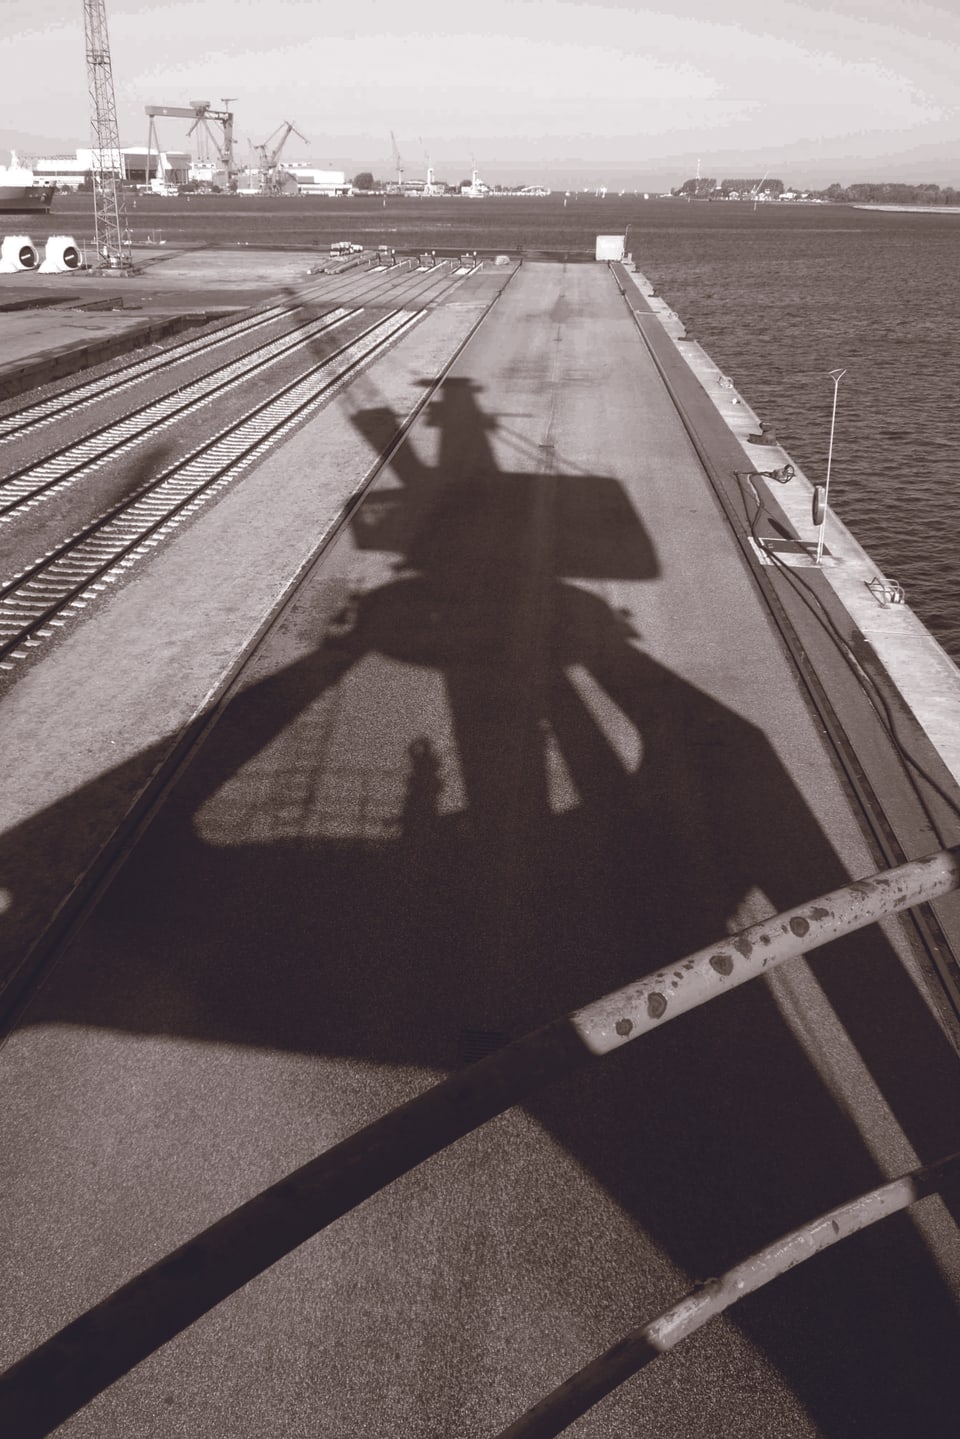 Der Schatten eines Hafenkrans in Schwarz-Weiss, dahinter das Meer.